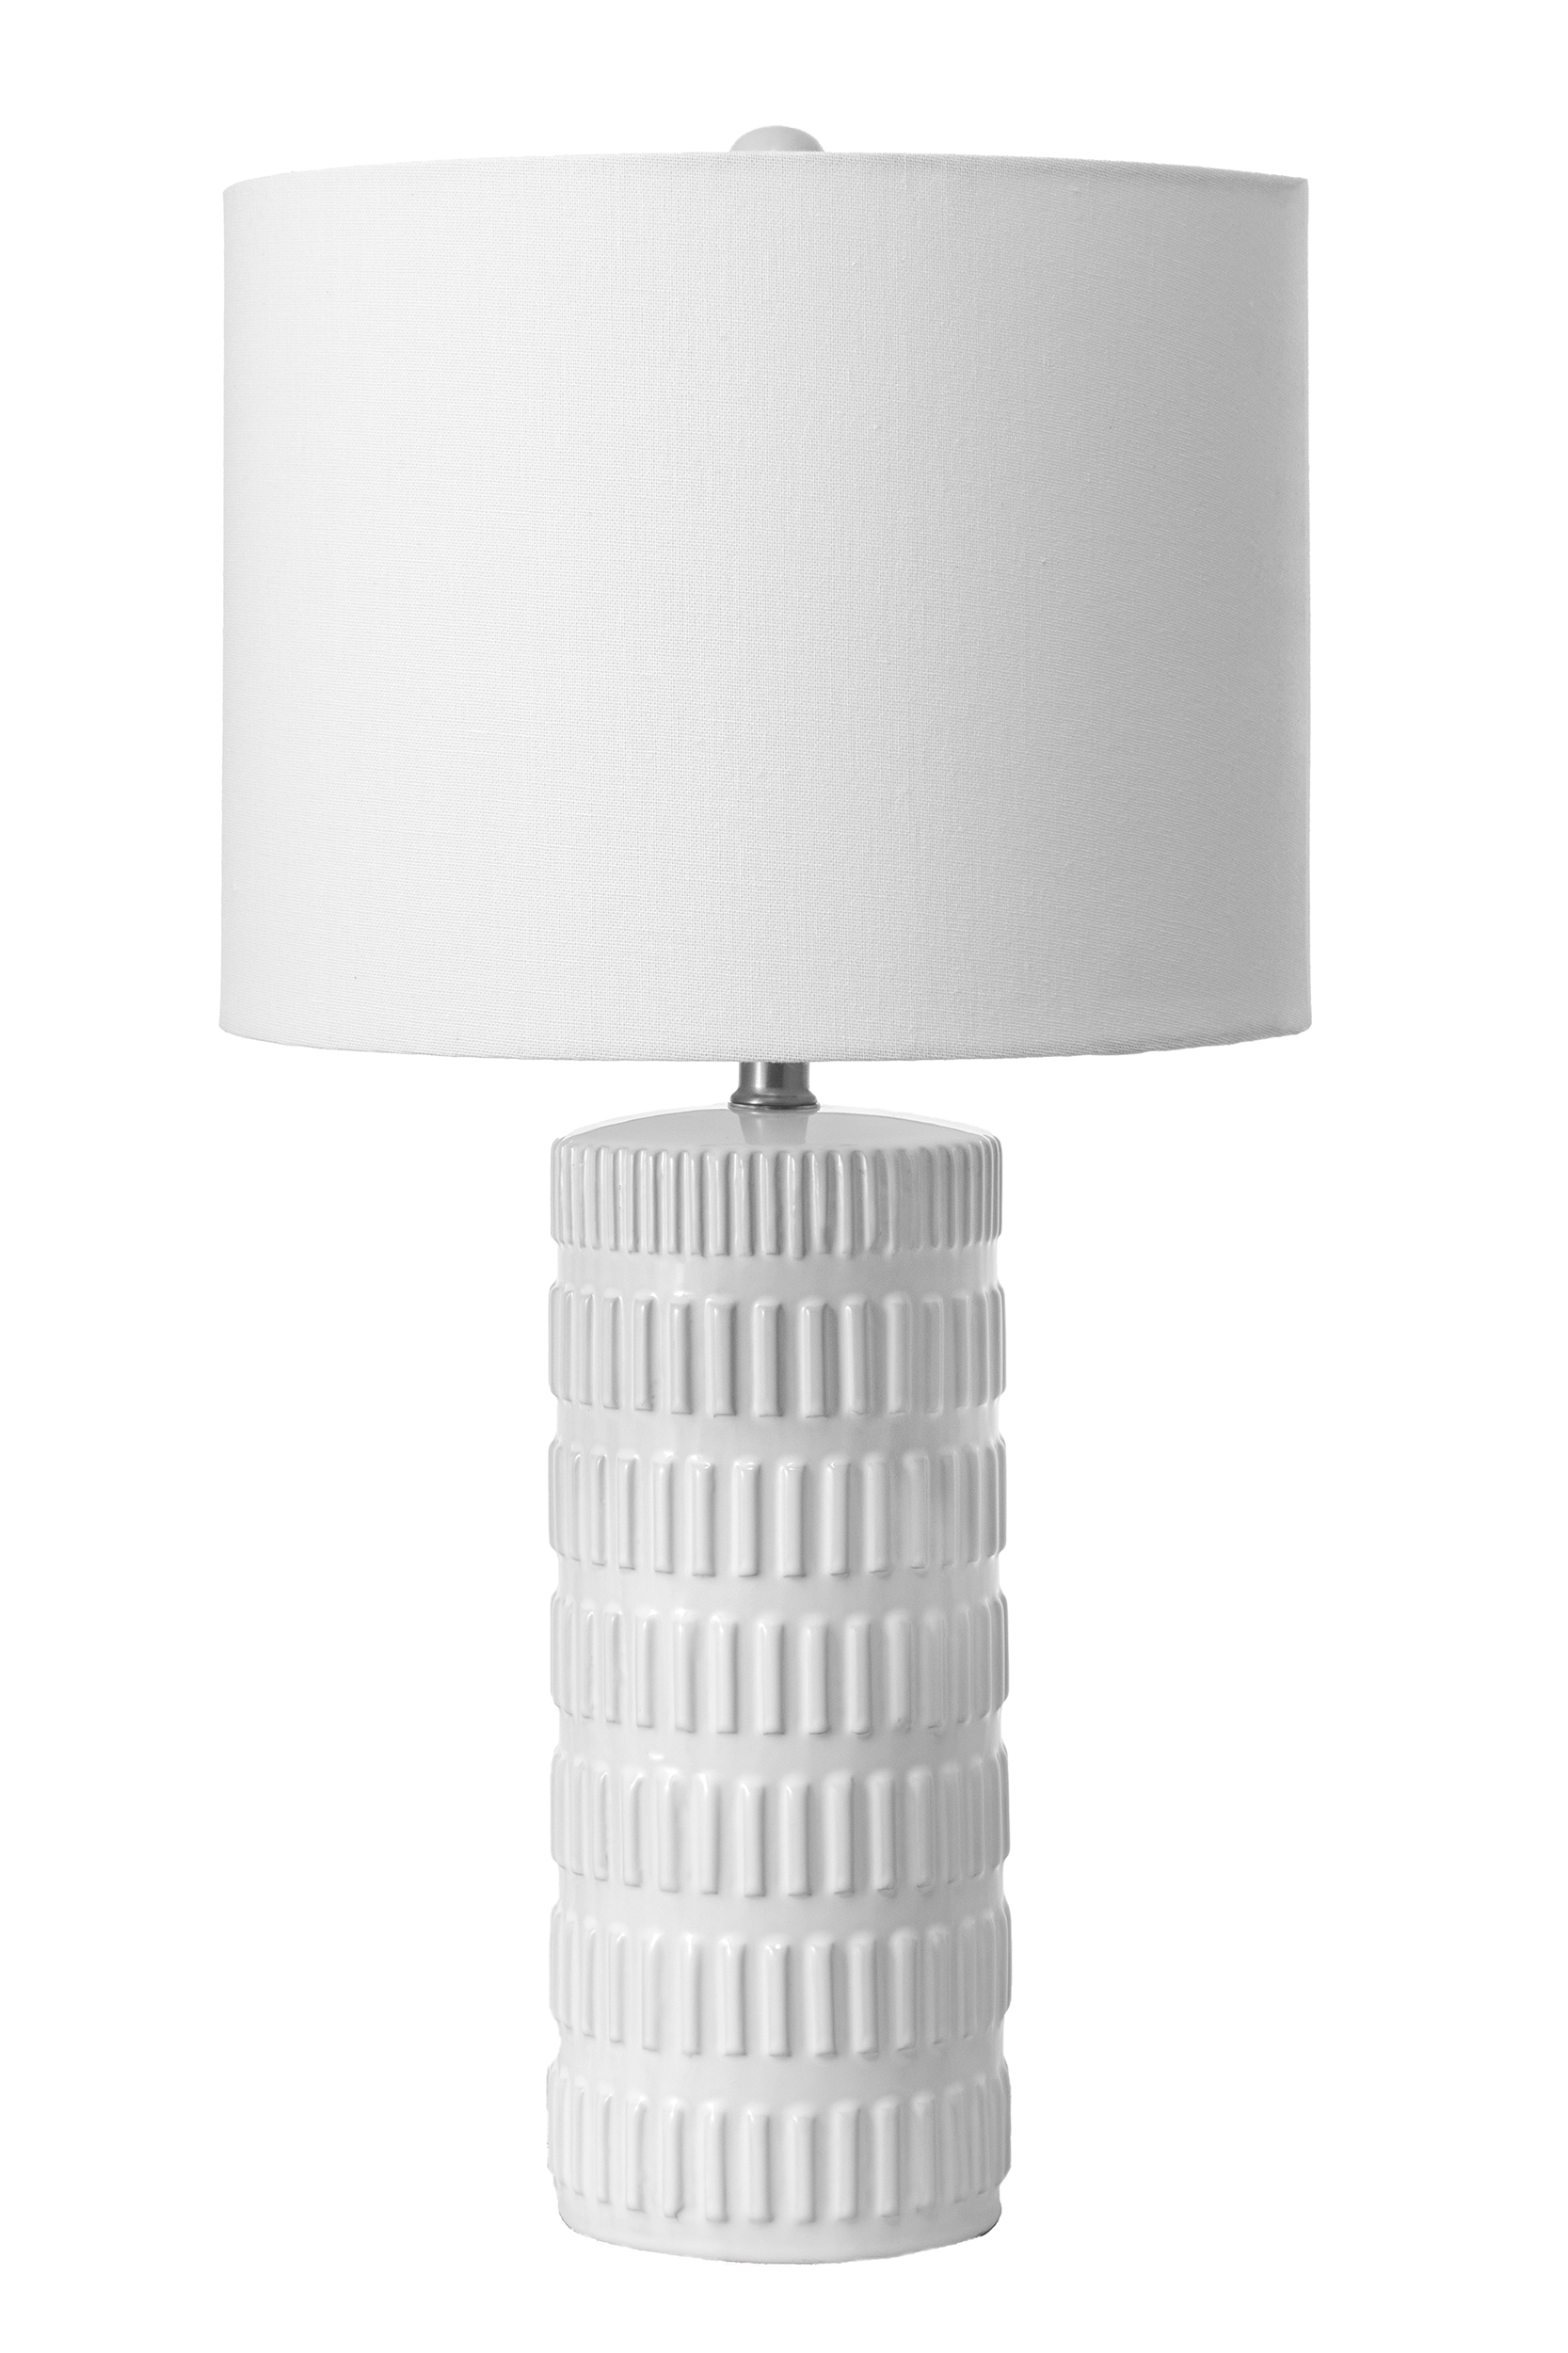 Franklin 25" Ceramic Table Lamp - Image 1